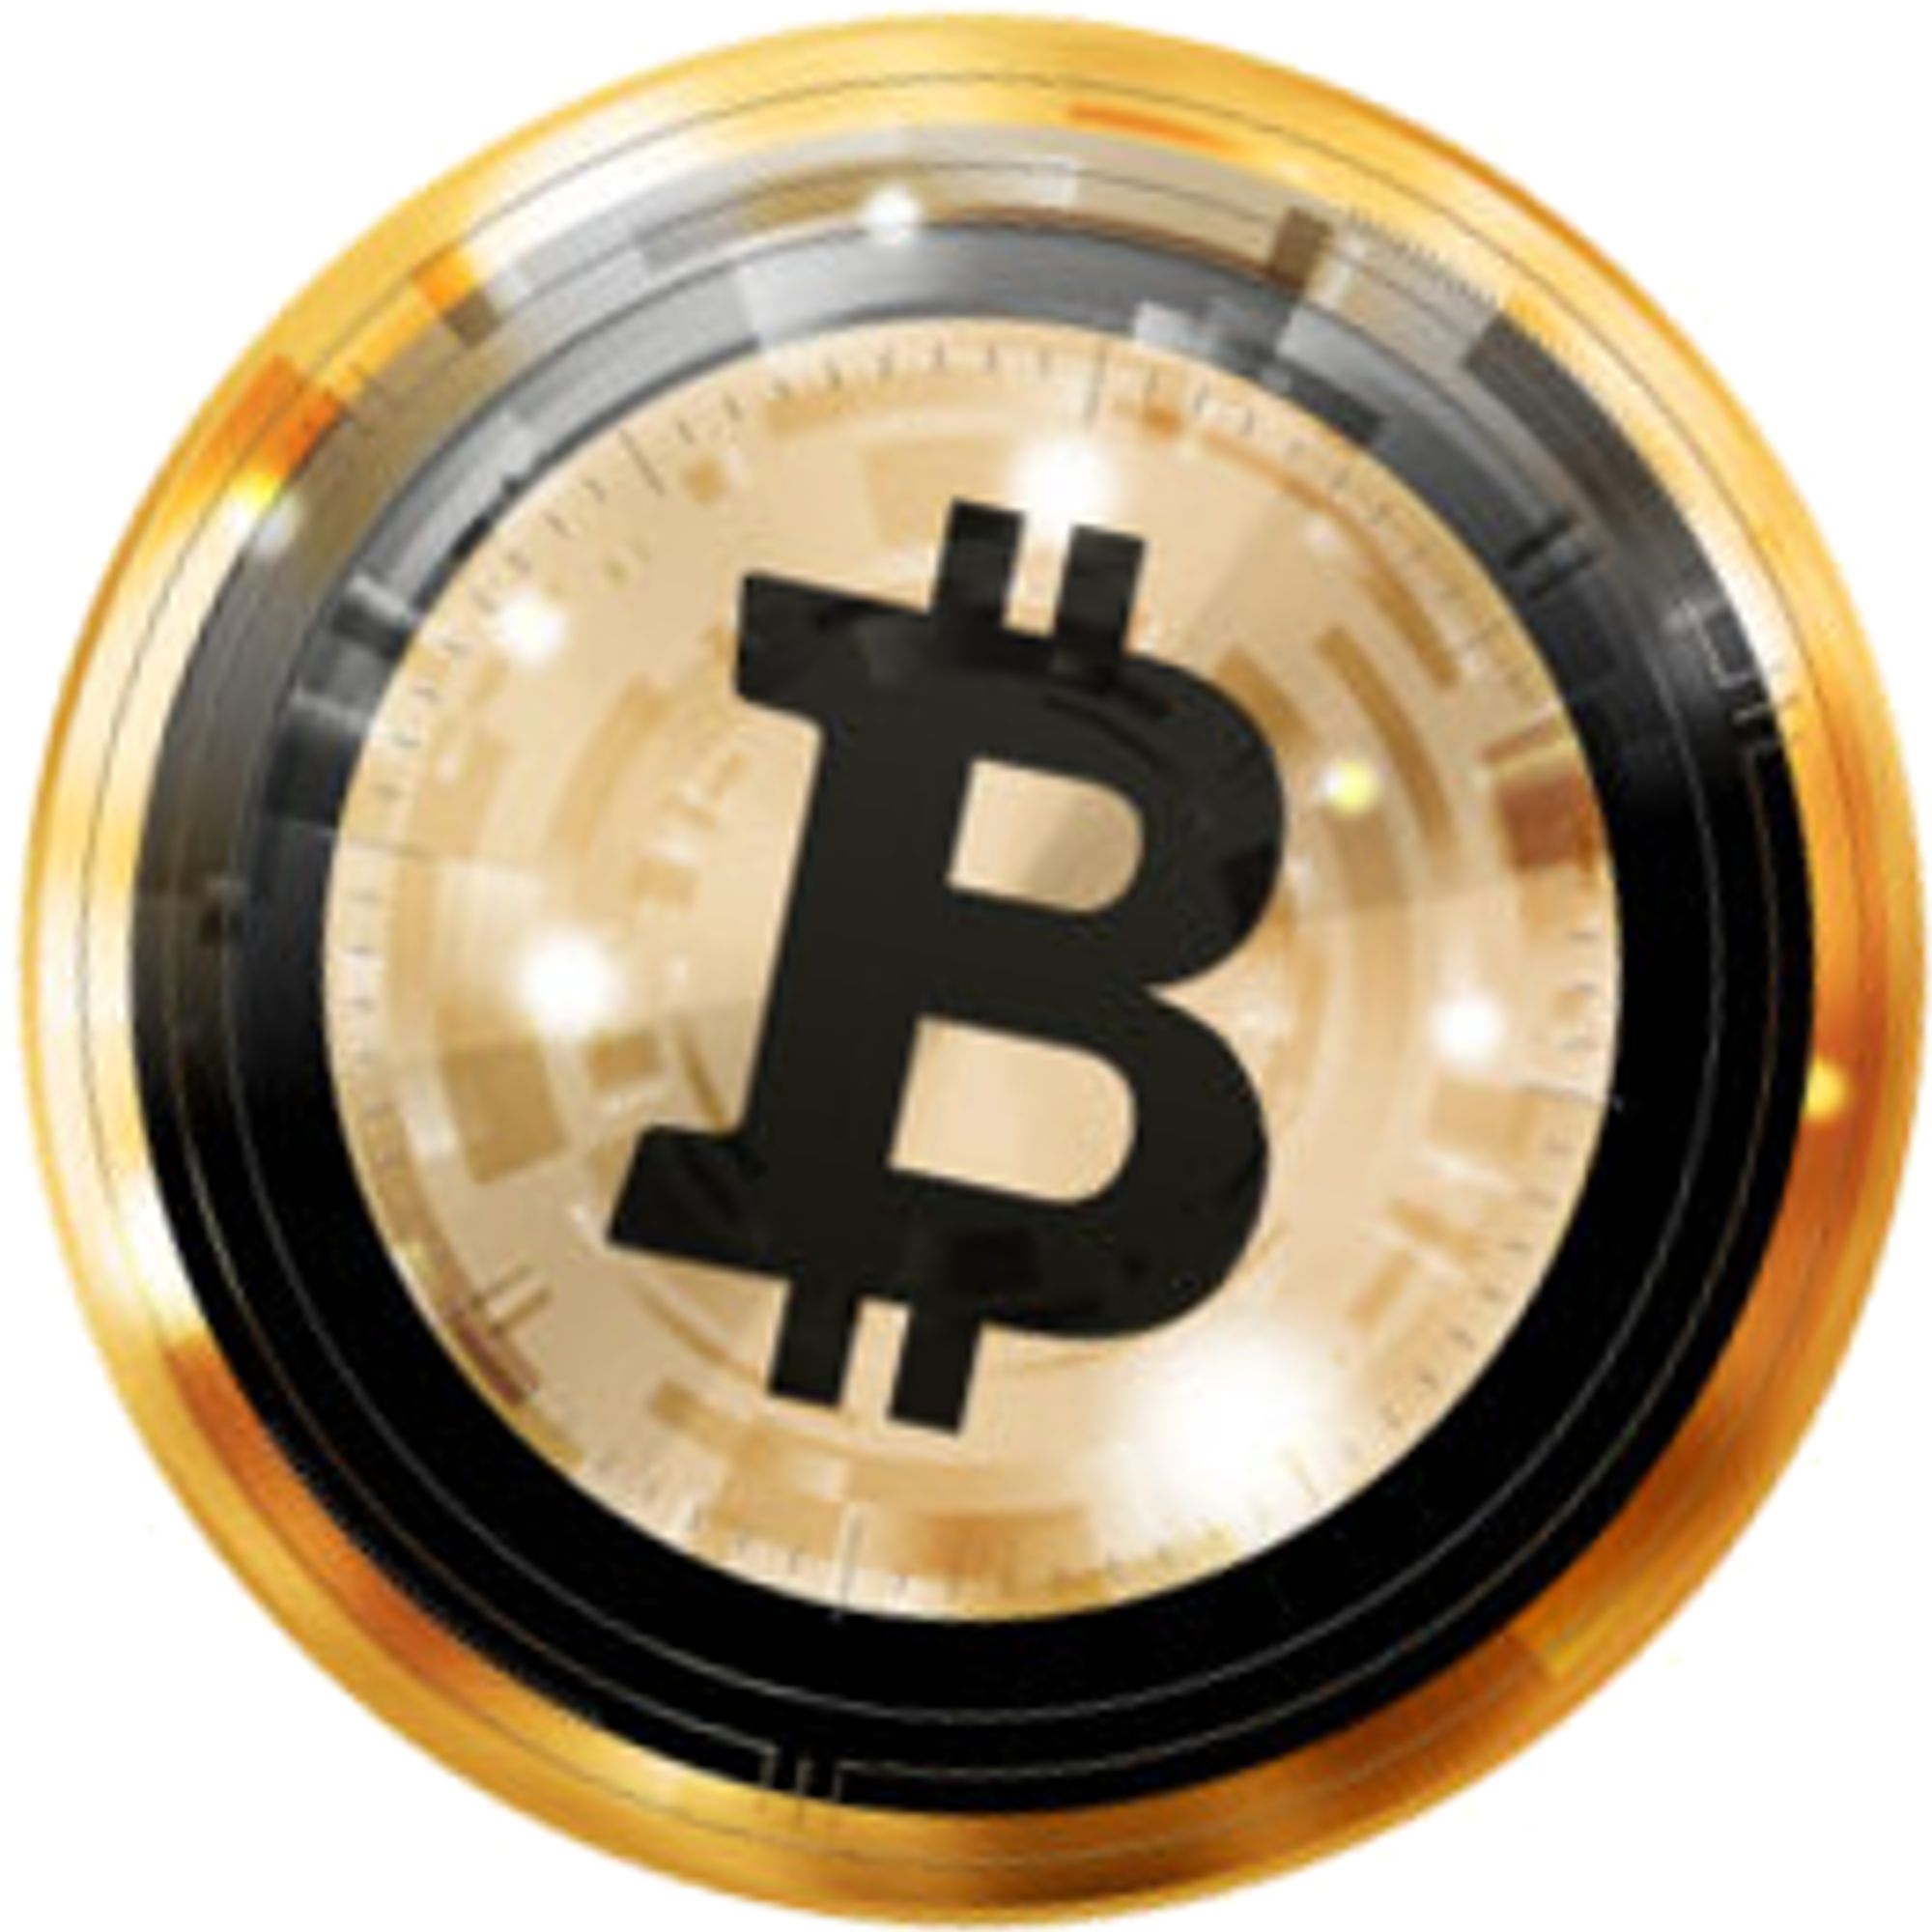 Bitcoin HQ info